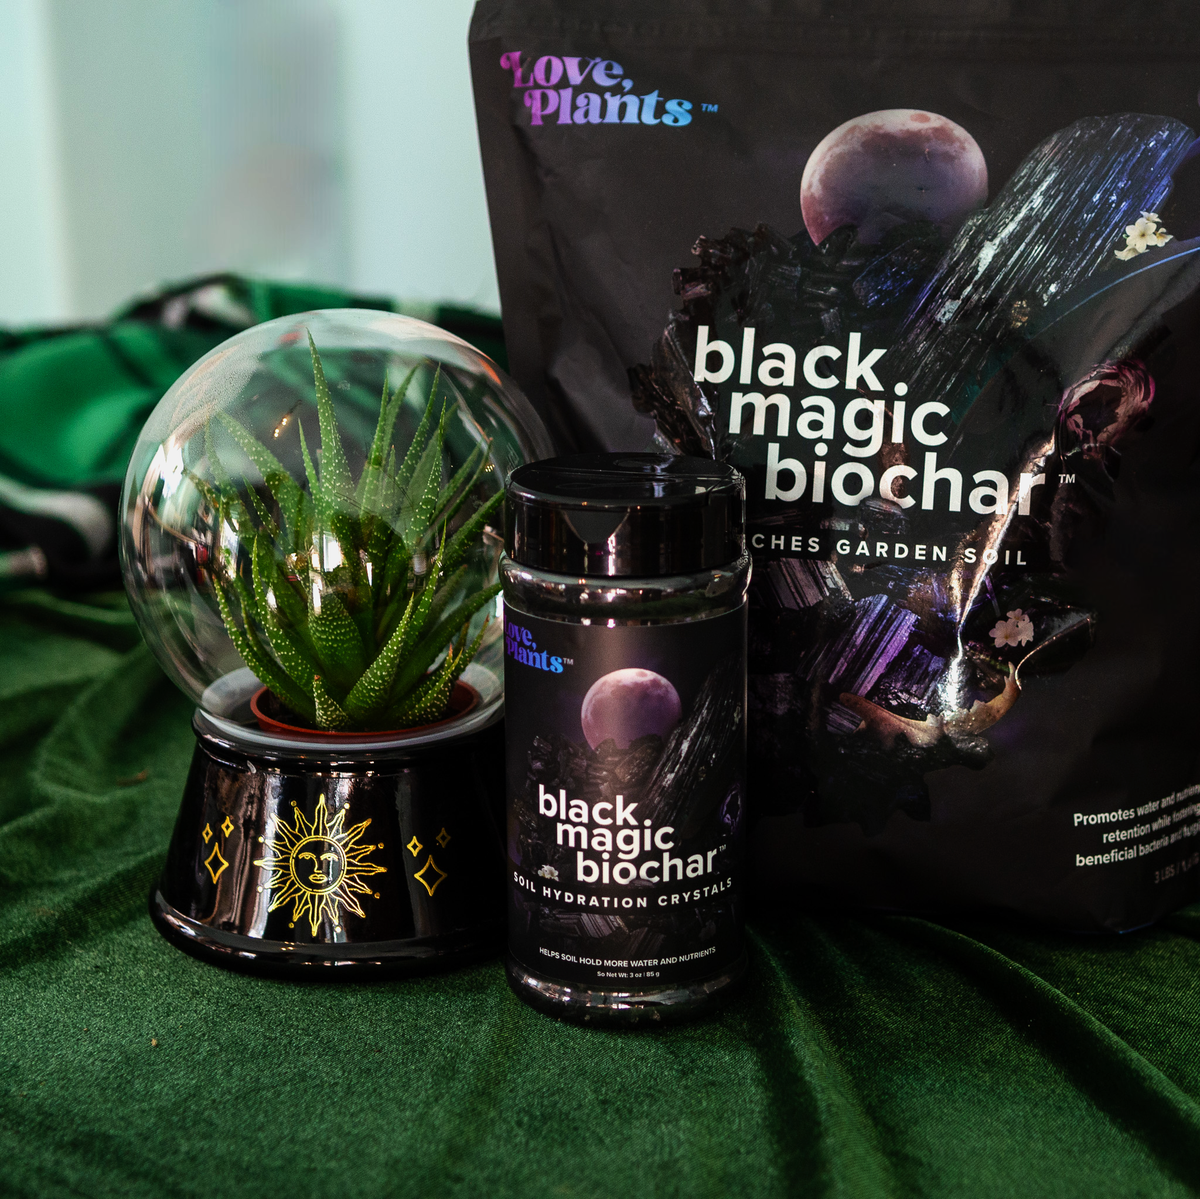 Black Magic Biochar